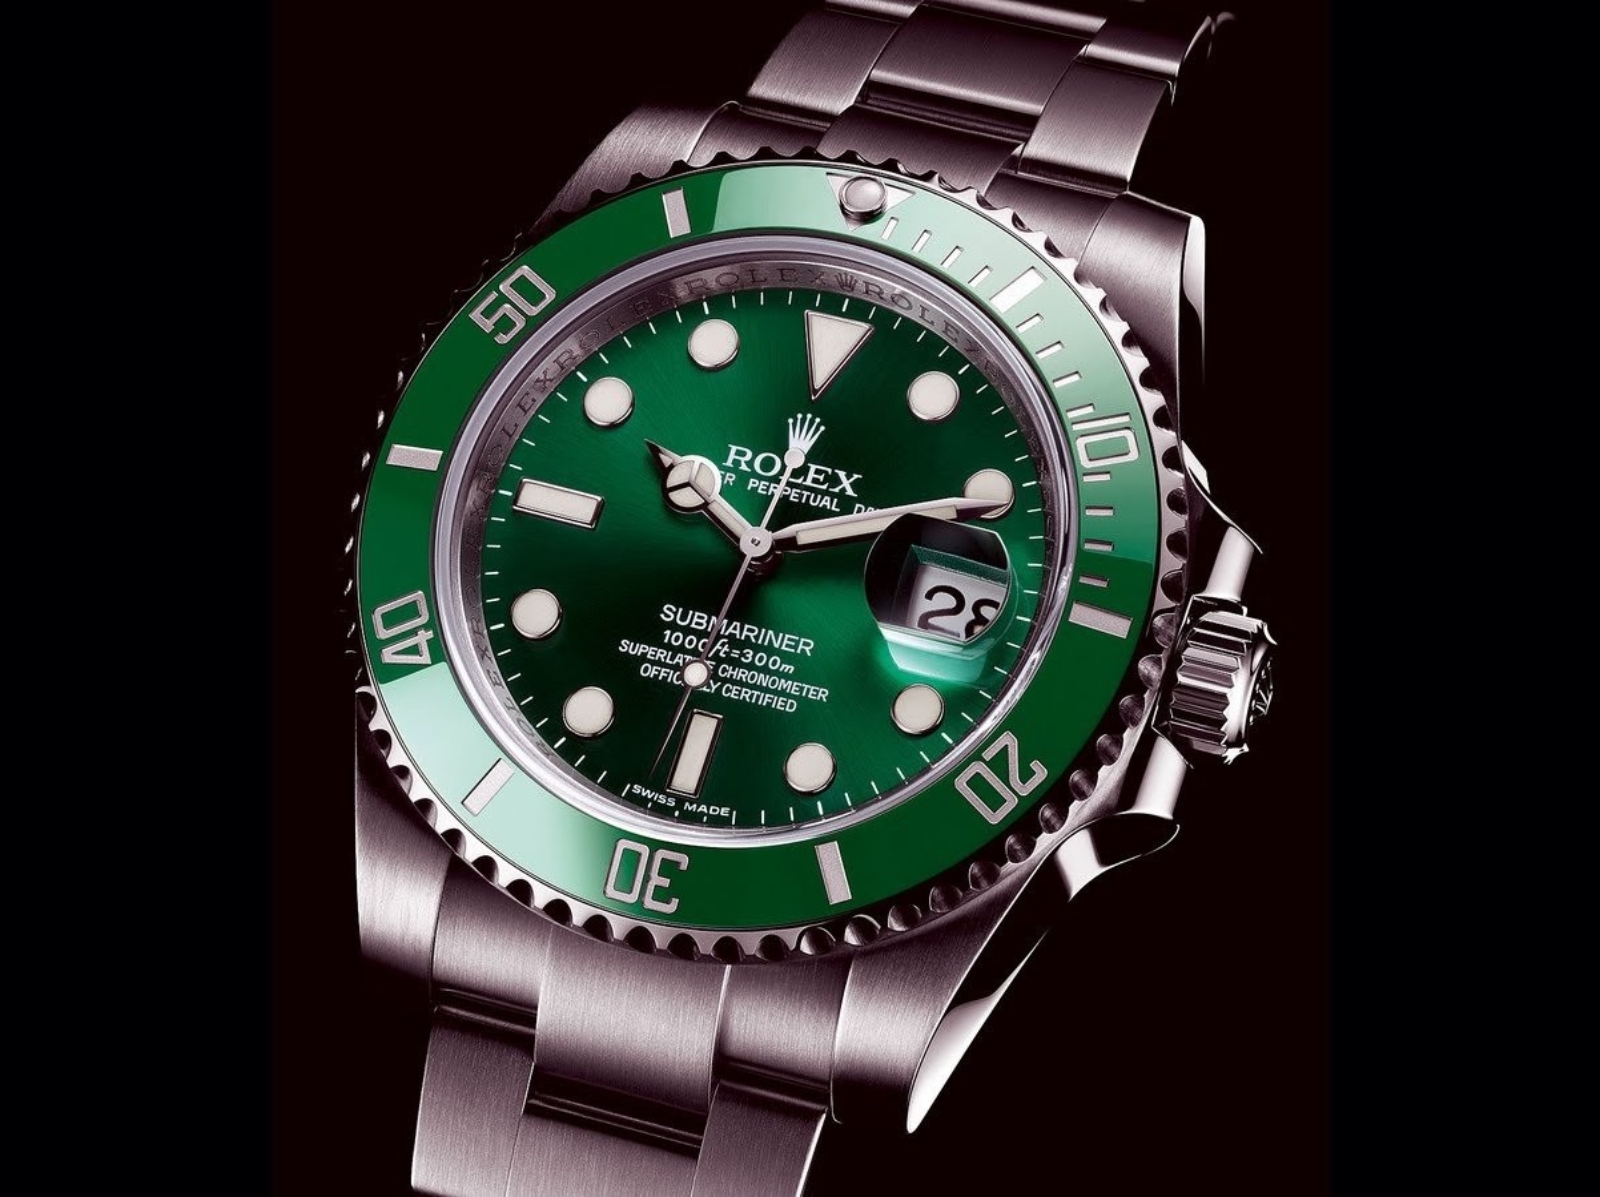 關於勞力士綠水鬼手錶 Submariner Date 必知 5 點懶人包整理，從價格、尺寸到特點ㄧ次解析！